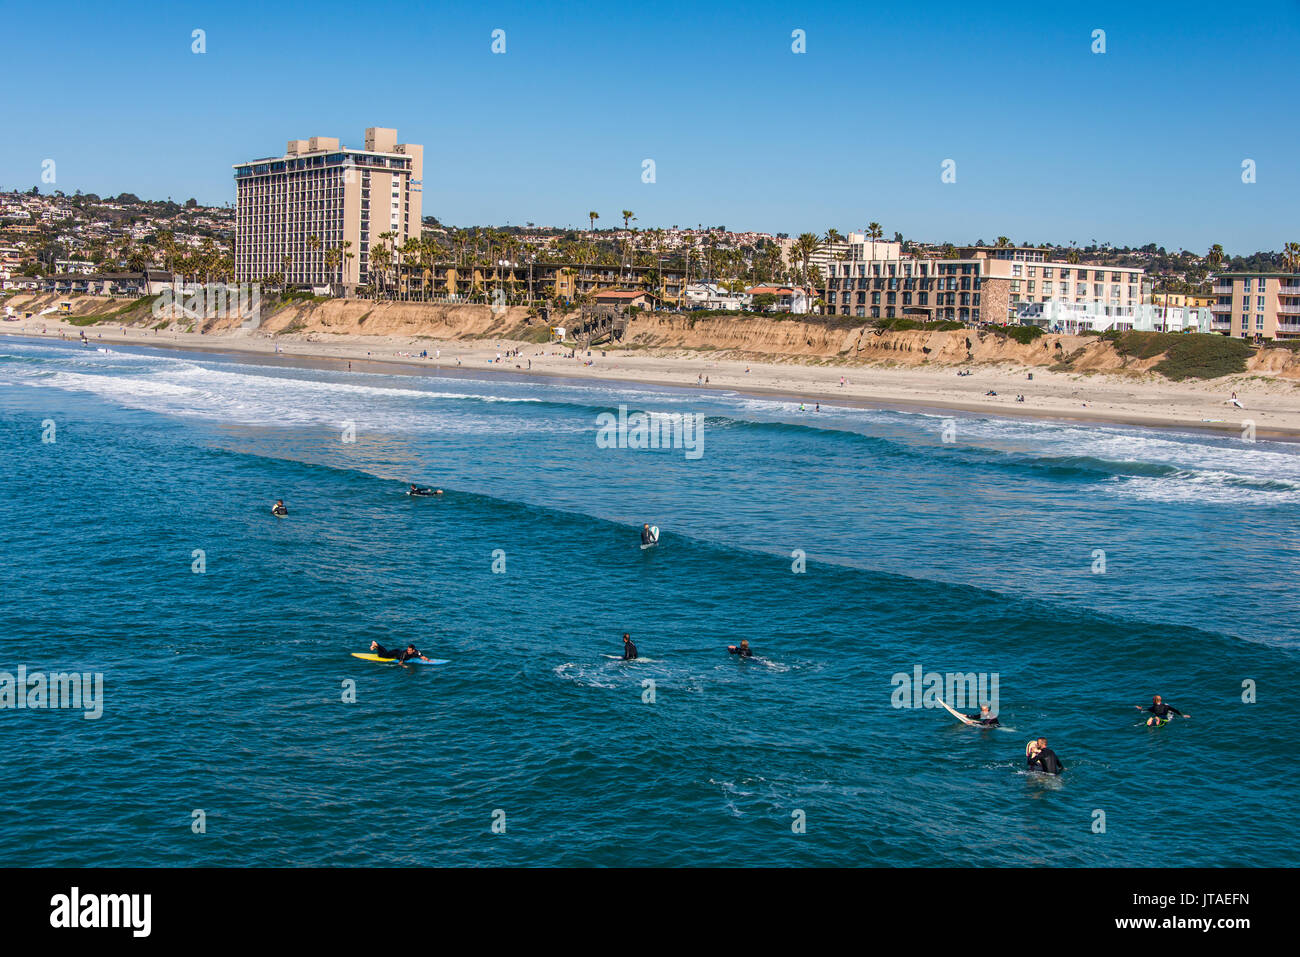 Los surfistas esperando en las aguas de La Jolla para la próxima ola grande, California, Estados Unidos de América, América del Norte Foto de stock